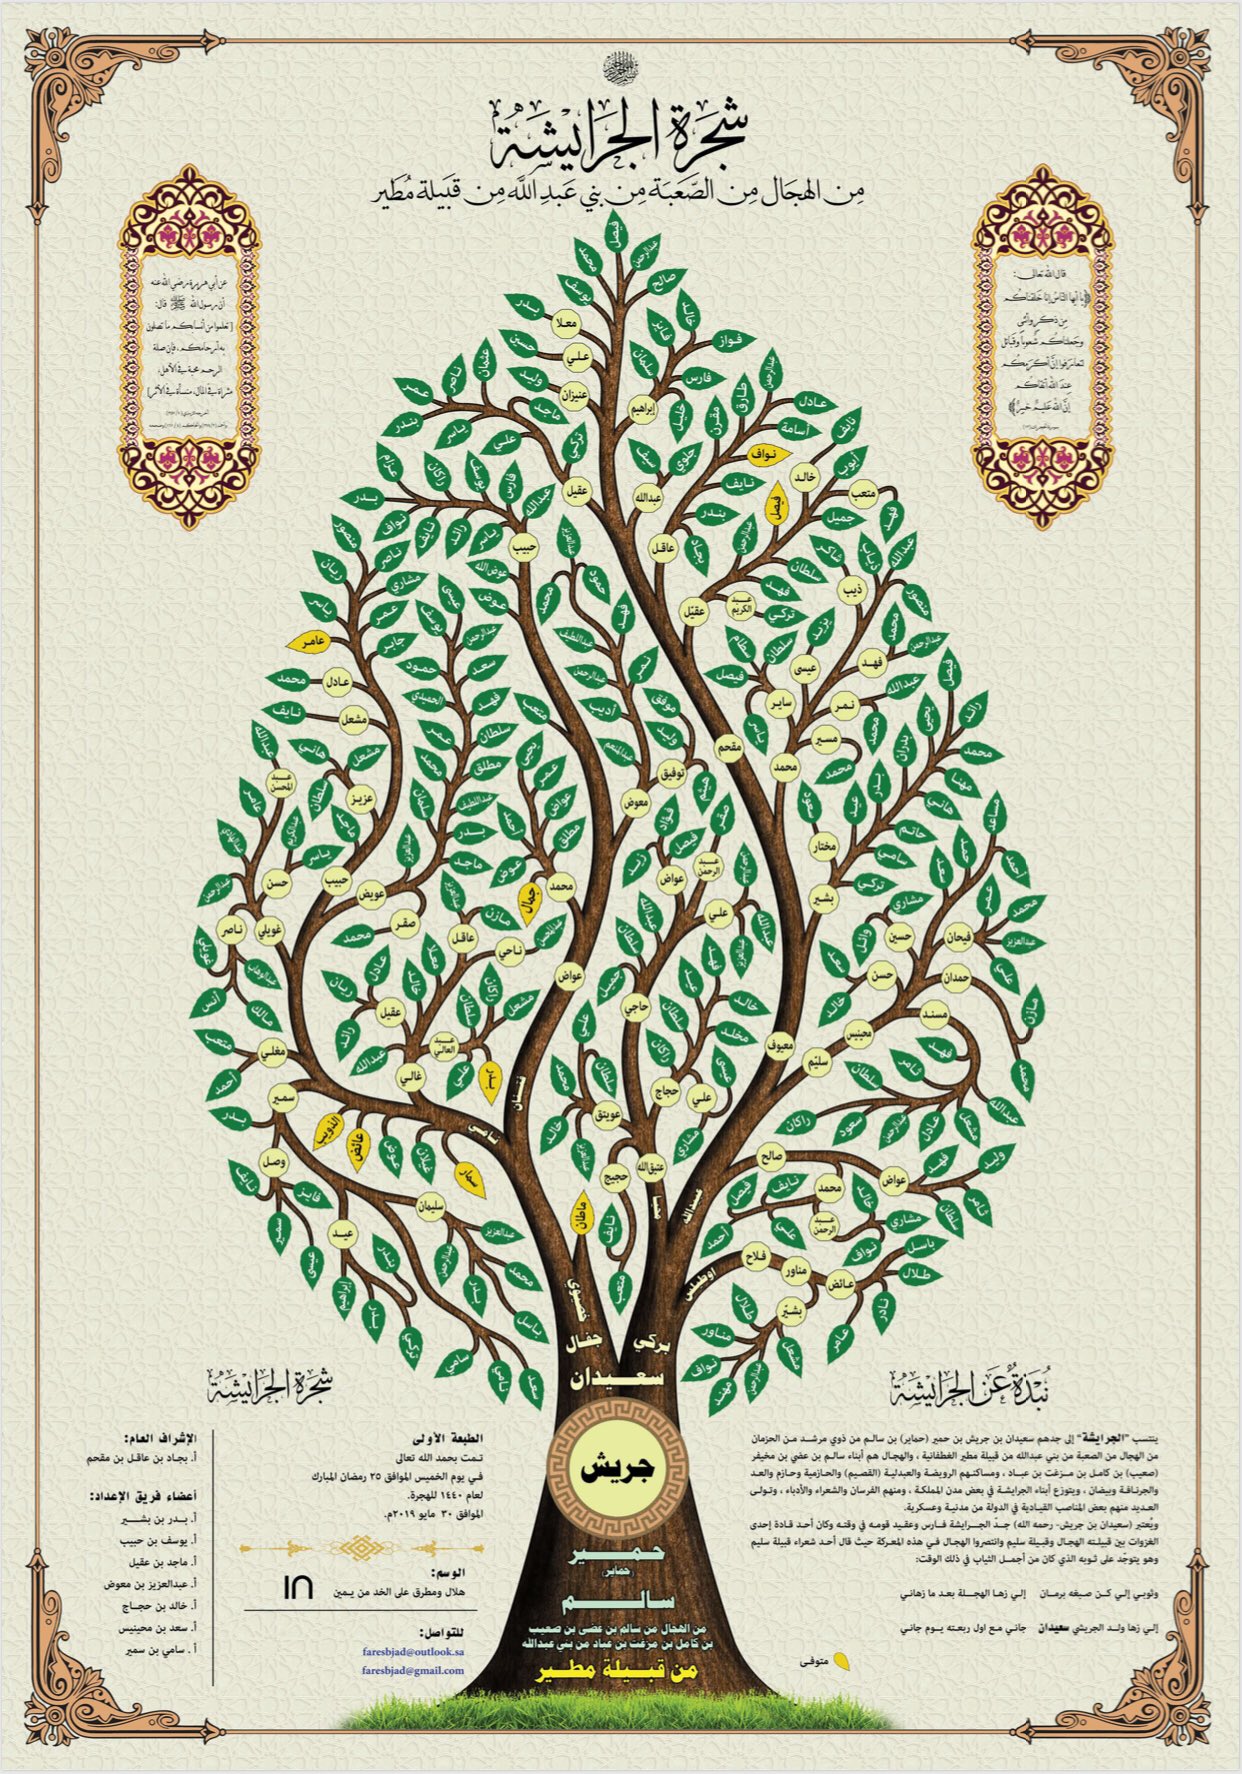 تصميم شجرة العائلة Auf Twitter من أعمالنا شجرة الجرايشة من الهجال من قبيلة مطير شجرة العائلة مشجرة مشجرات